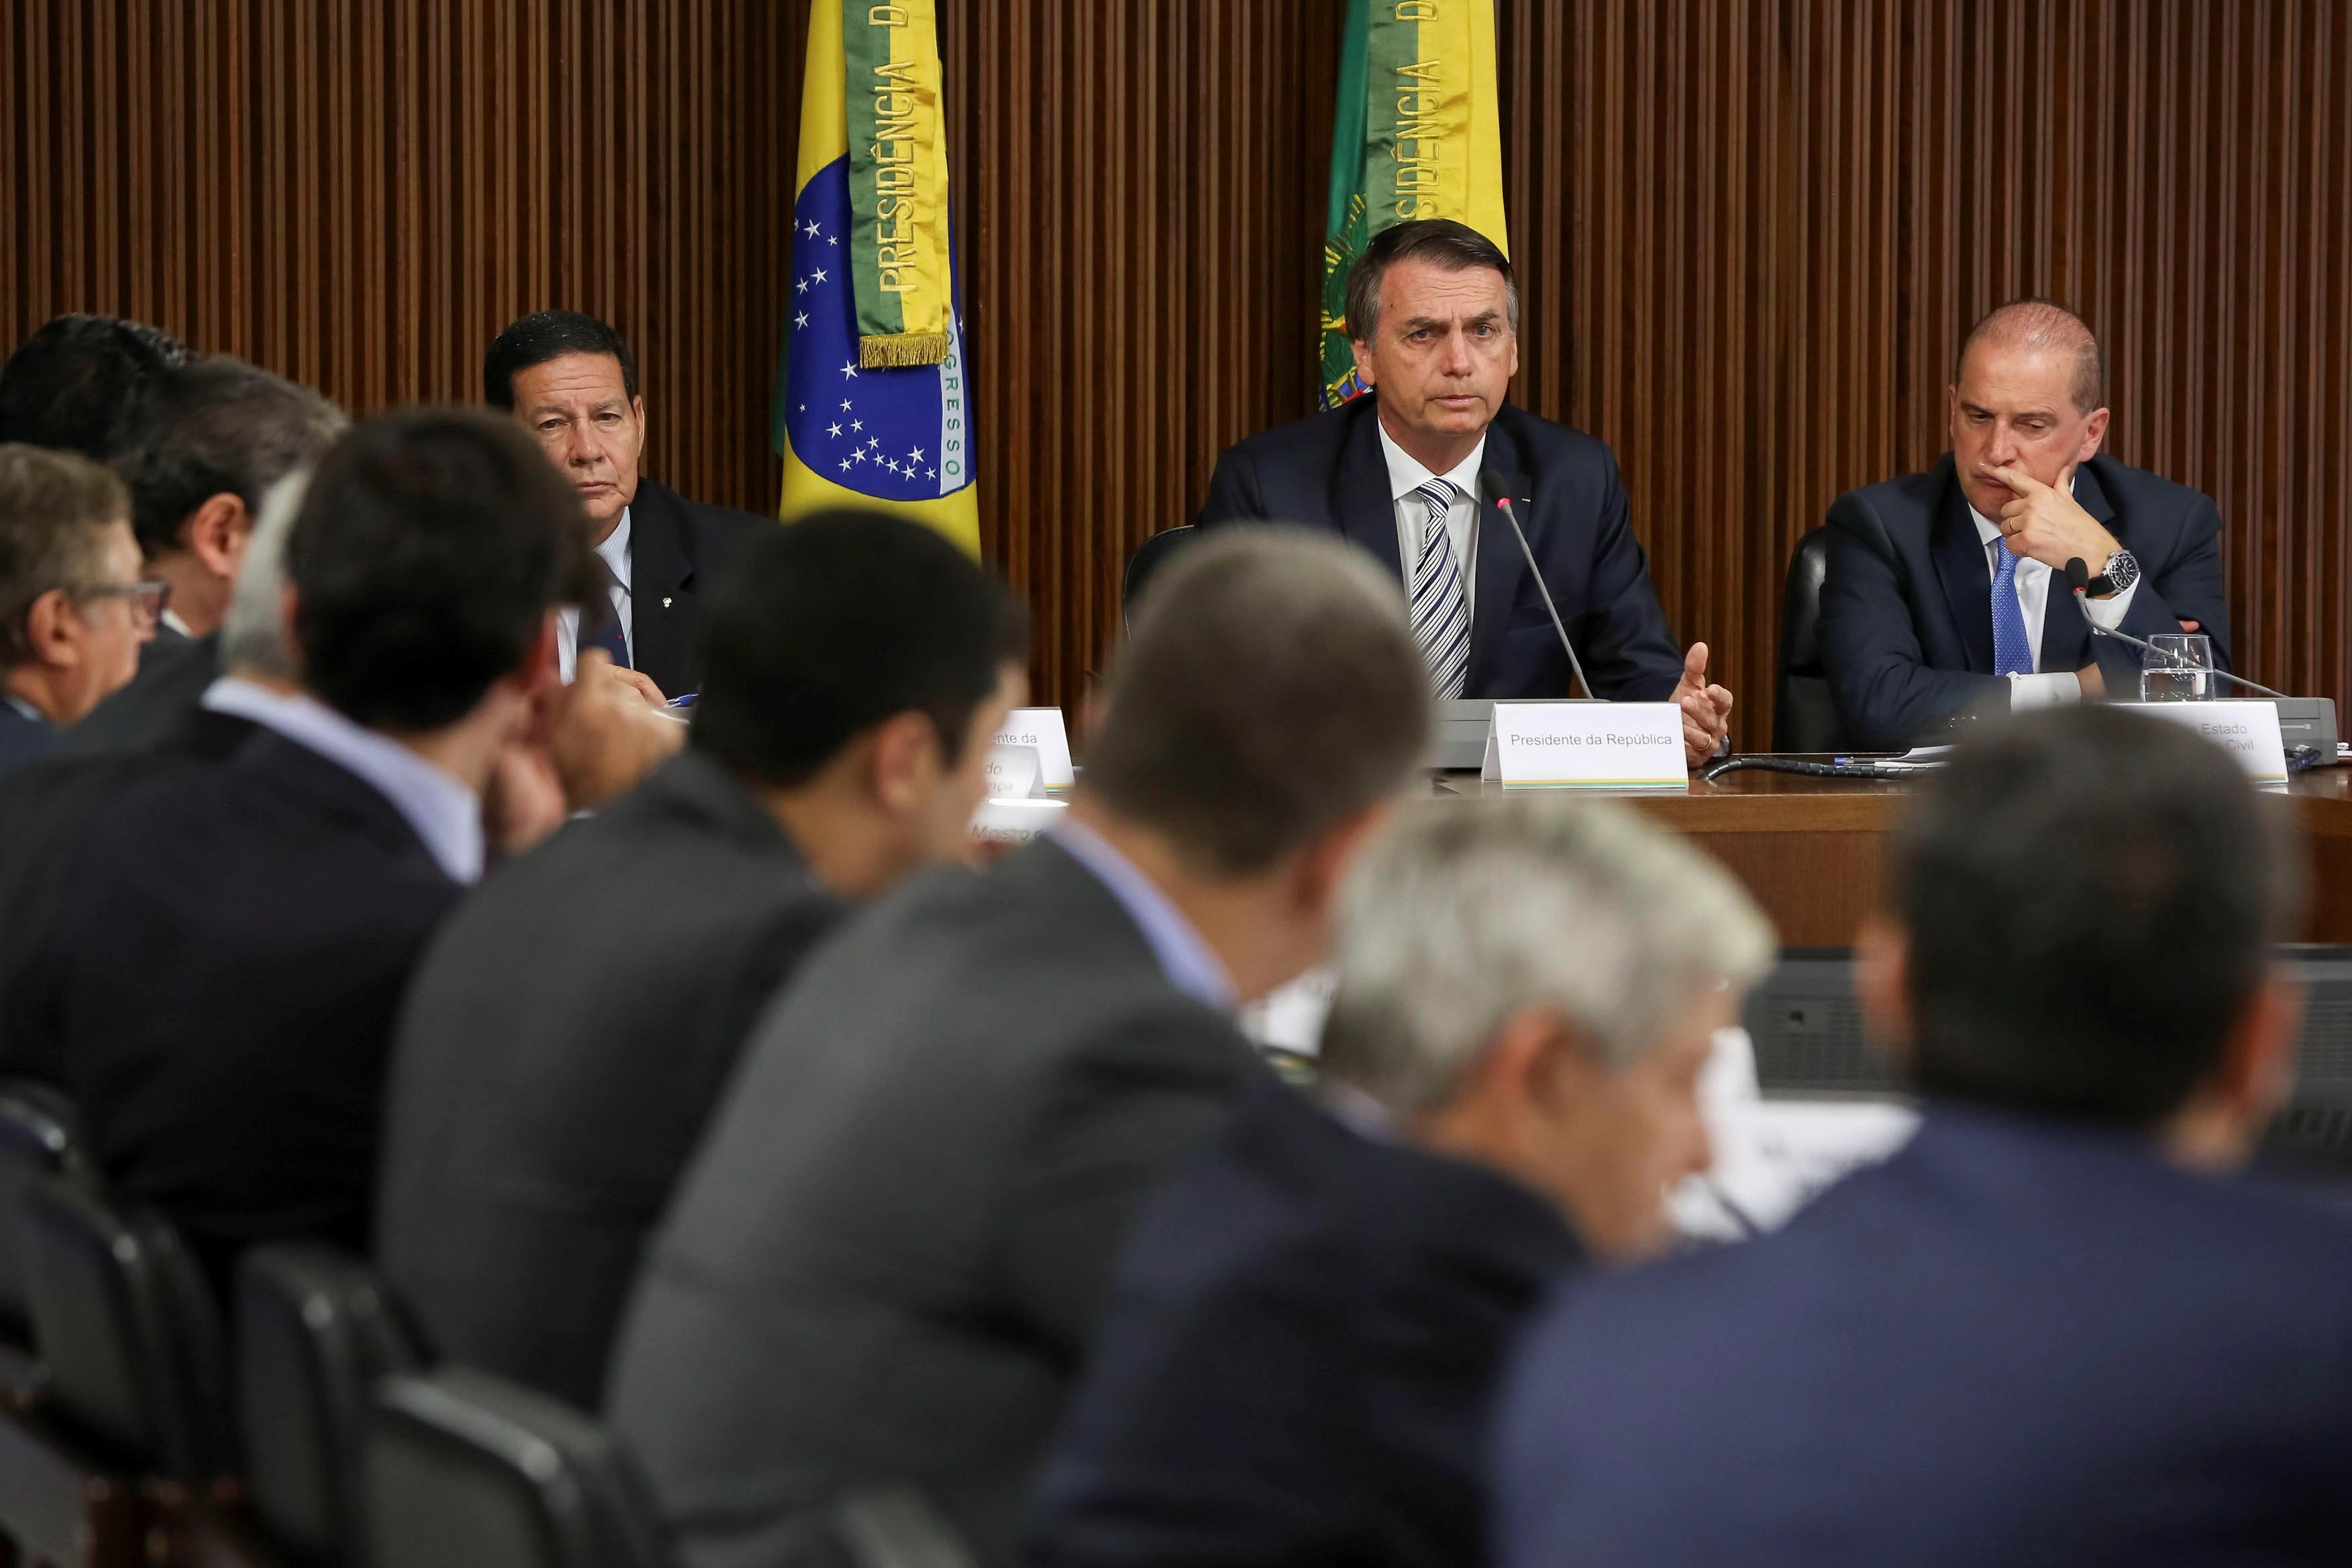  Gobierno de Bolsonaro hará lo posible para que Lula siga preso